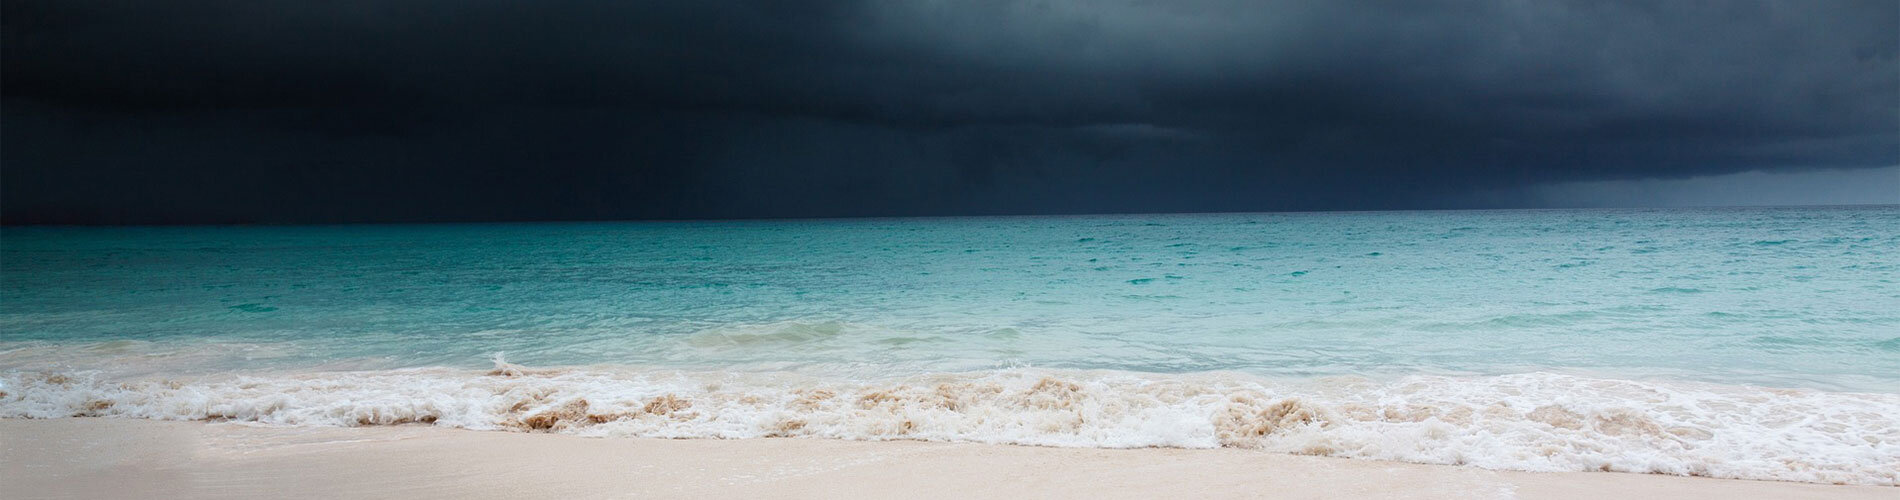 A dark cloud looms over a beach.